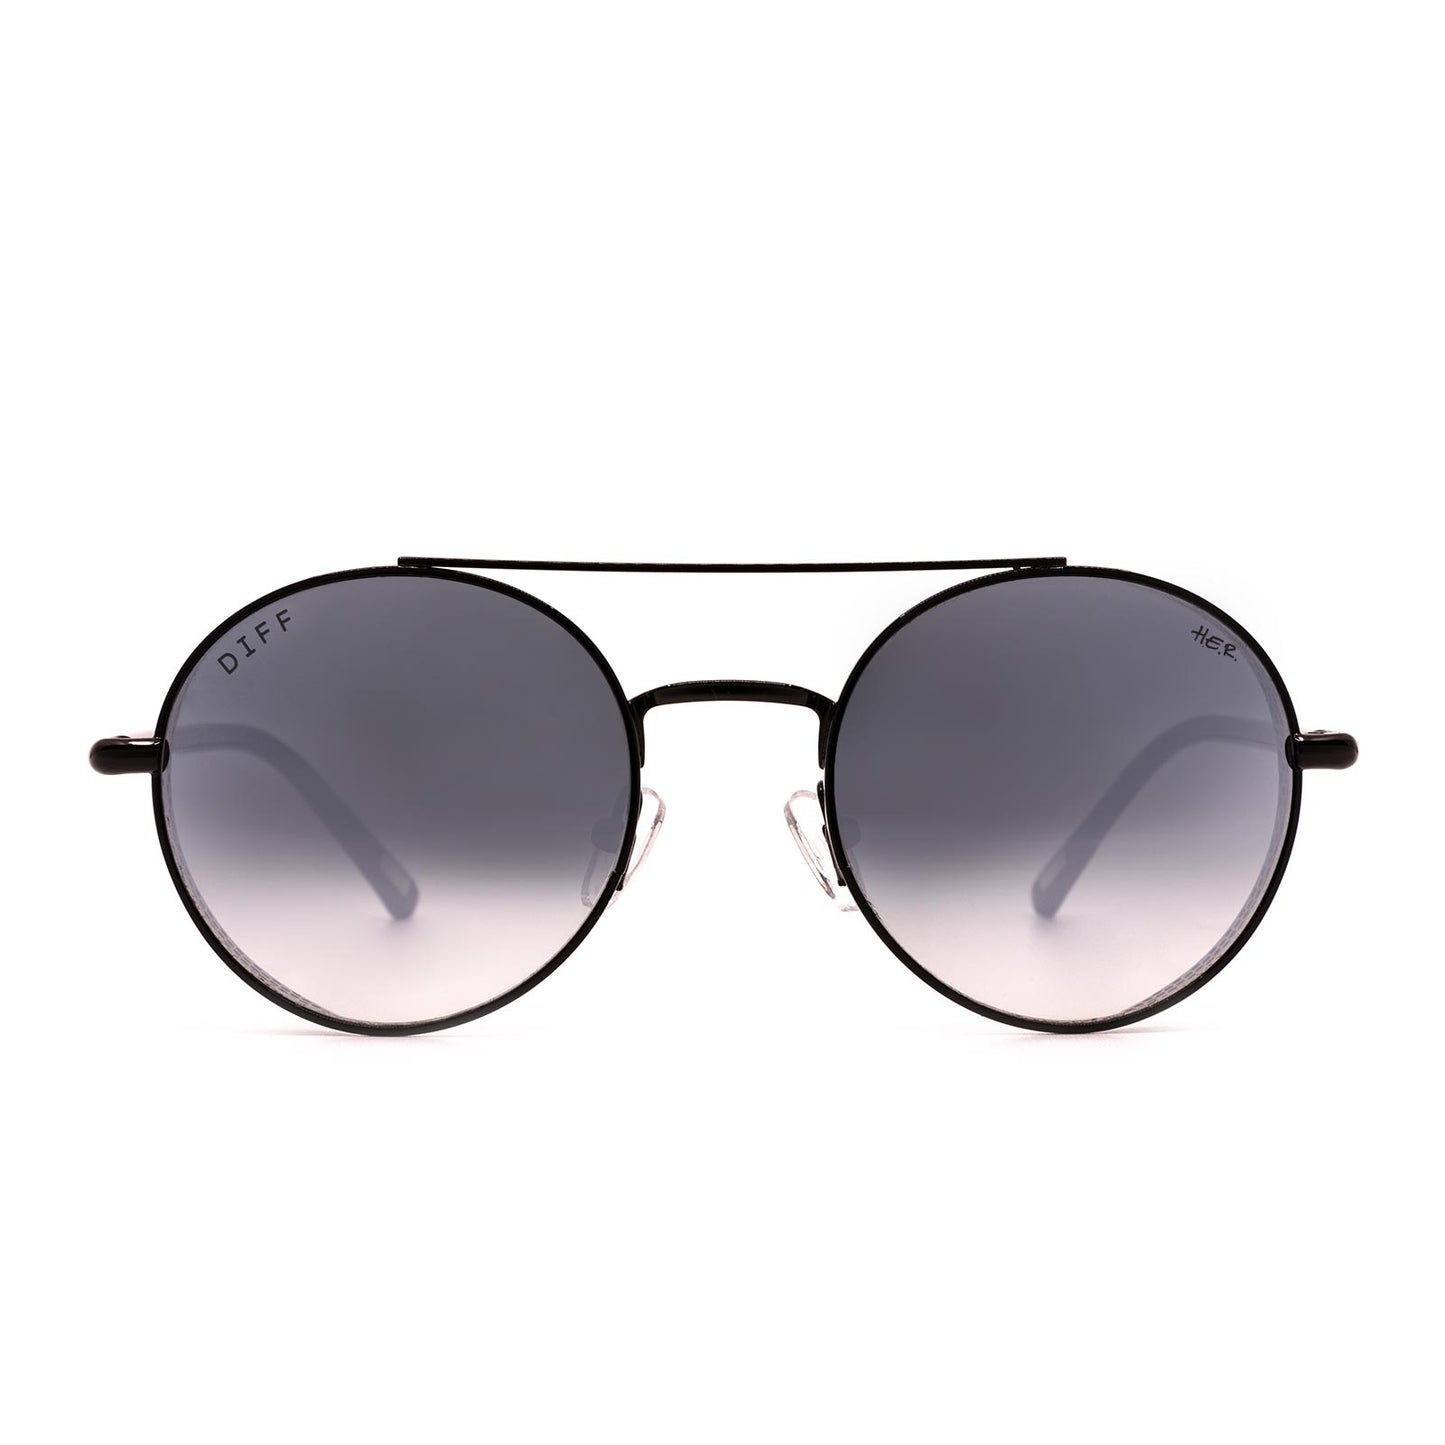 H.E.R. - Driver + Black + Grey Gradient Flash Sunglasses